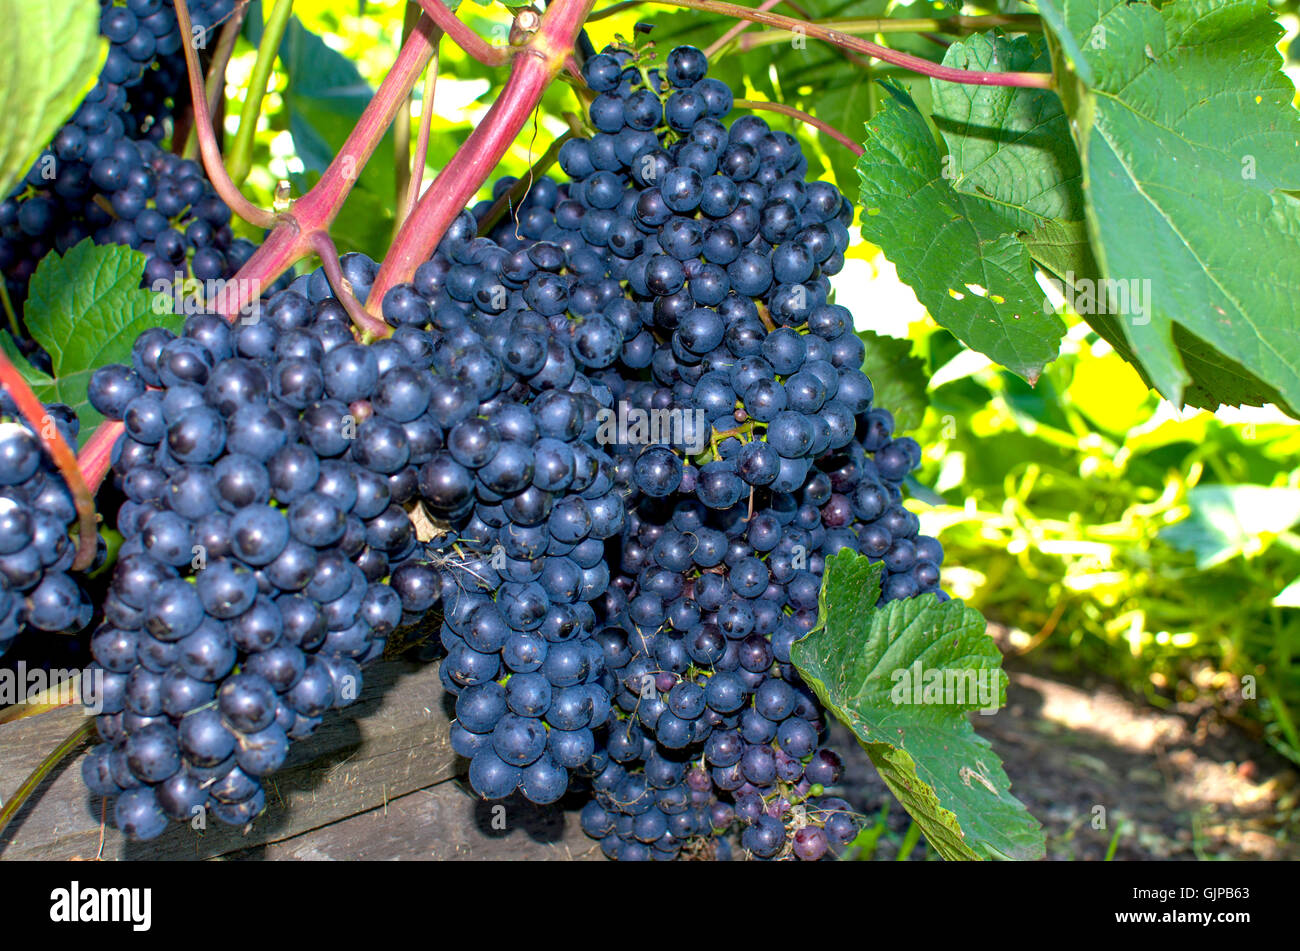 Berry uvas maduras sobre casquillos,una rama, un arbusto, un postre, una fruta, un jardín, una planta, negro, alimentos, jardinería, uvas Foto de stock